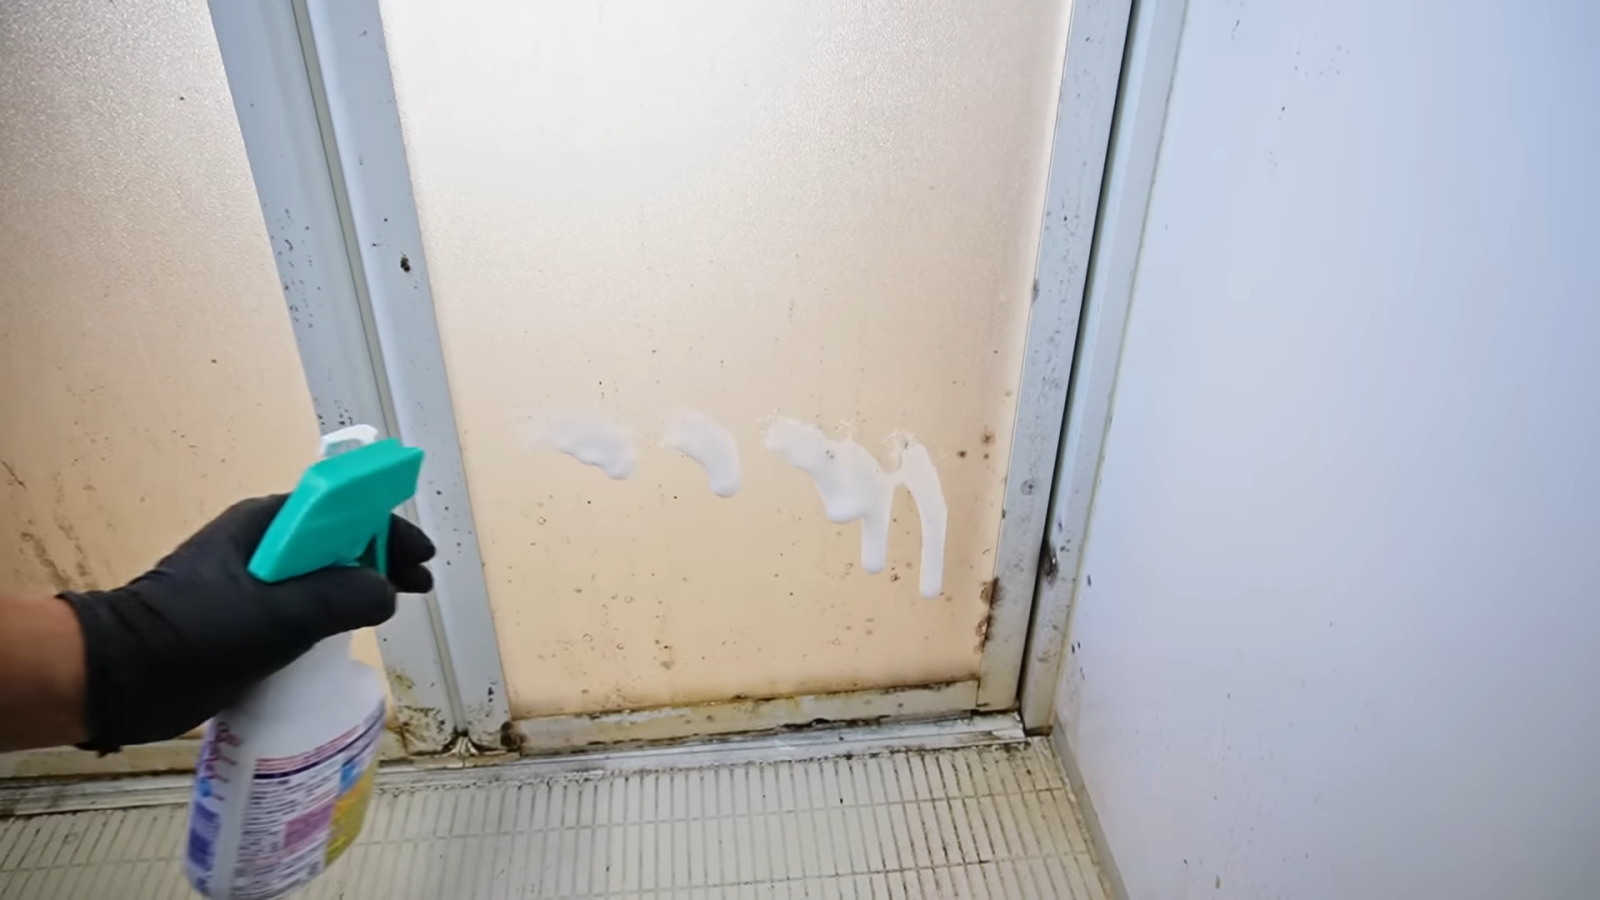 カビ汚れがついたお風呂場のドアに洗剤をまく男性